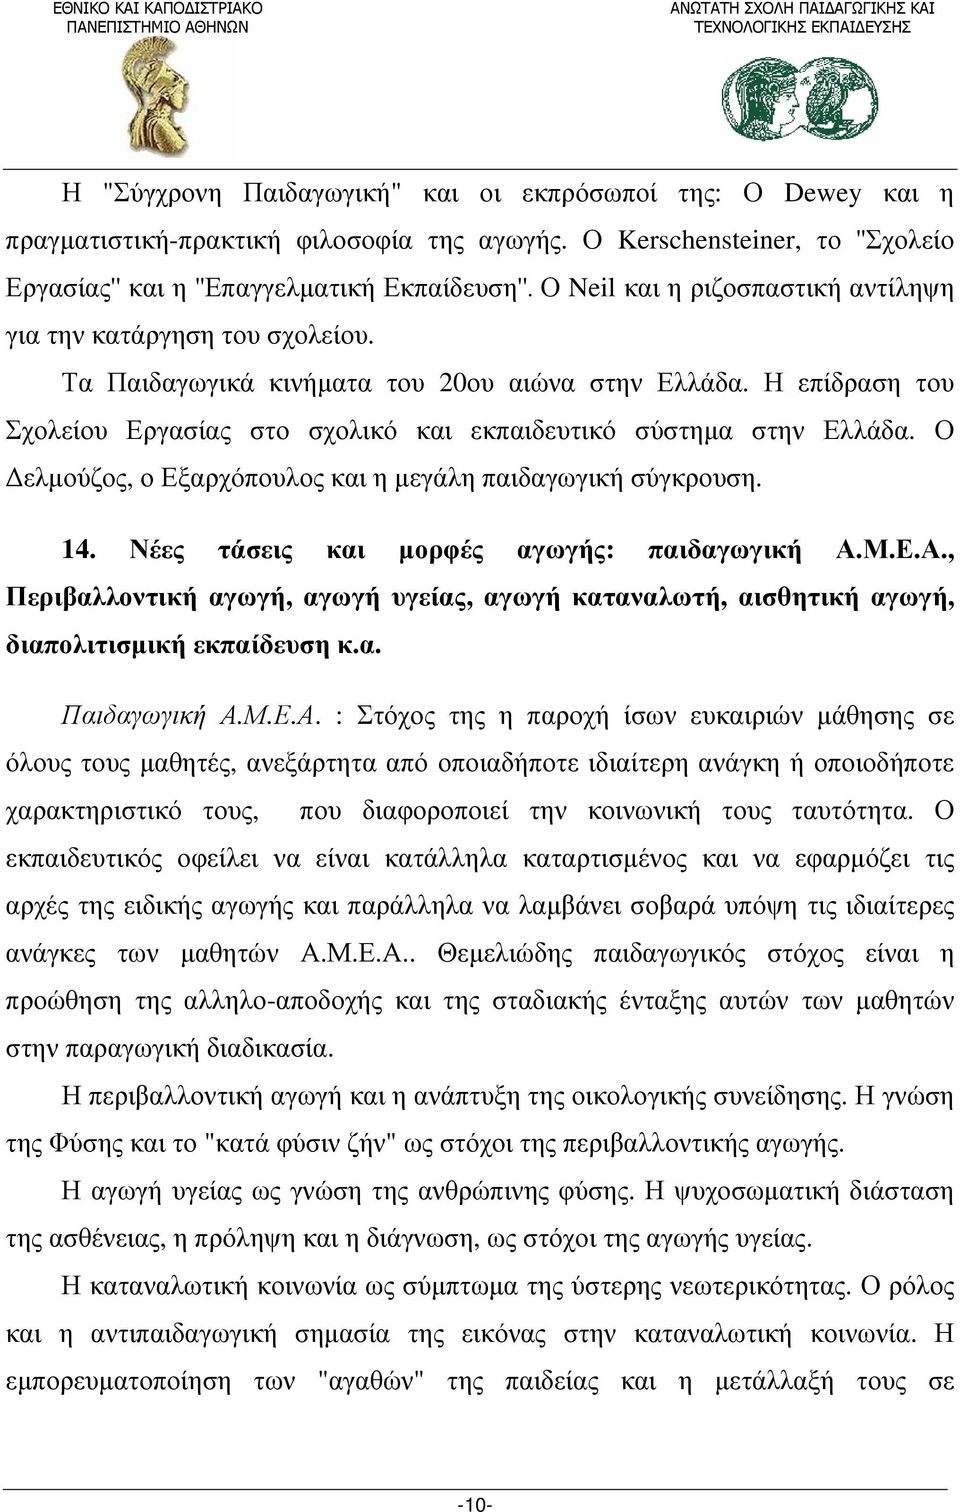 Η επίδραση του Σχολείου Εργασίας στο σχολικό και εκπαιδευτικό σύστημα στην Ελλάδα. Ο Δελμούζος, ο Εξαρχόπουλος και η μεγάλη παιδαγωγική σύγκρουση. 14. Νέες τάσεις και μορφές αγωγής: παιδαγωγική Α.